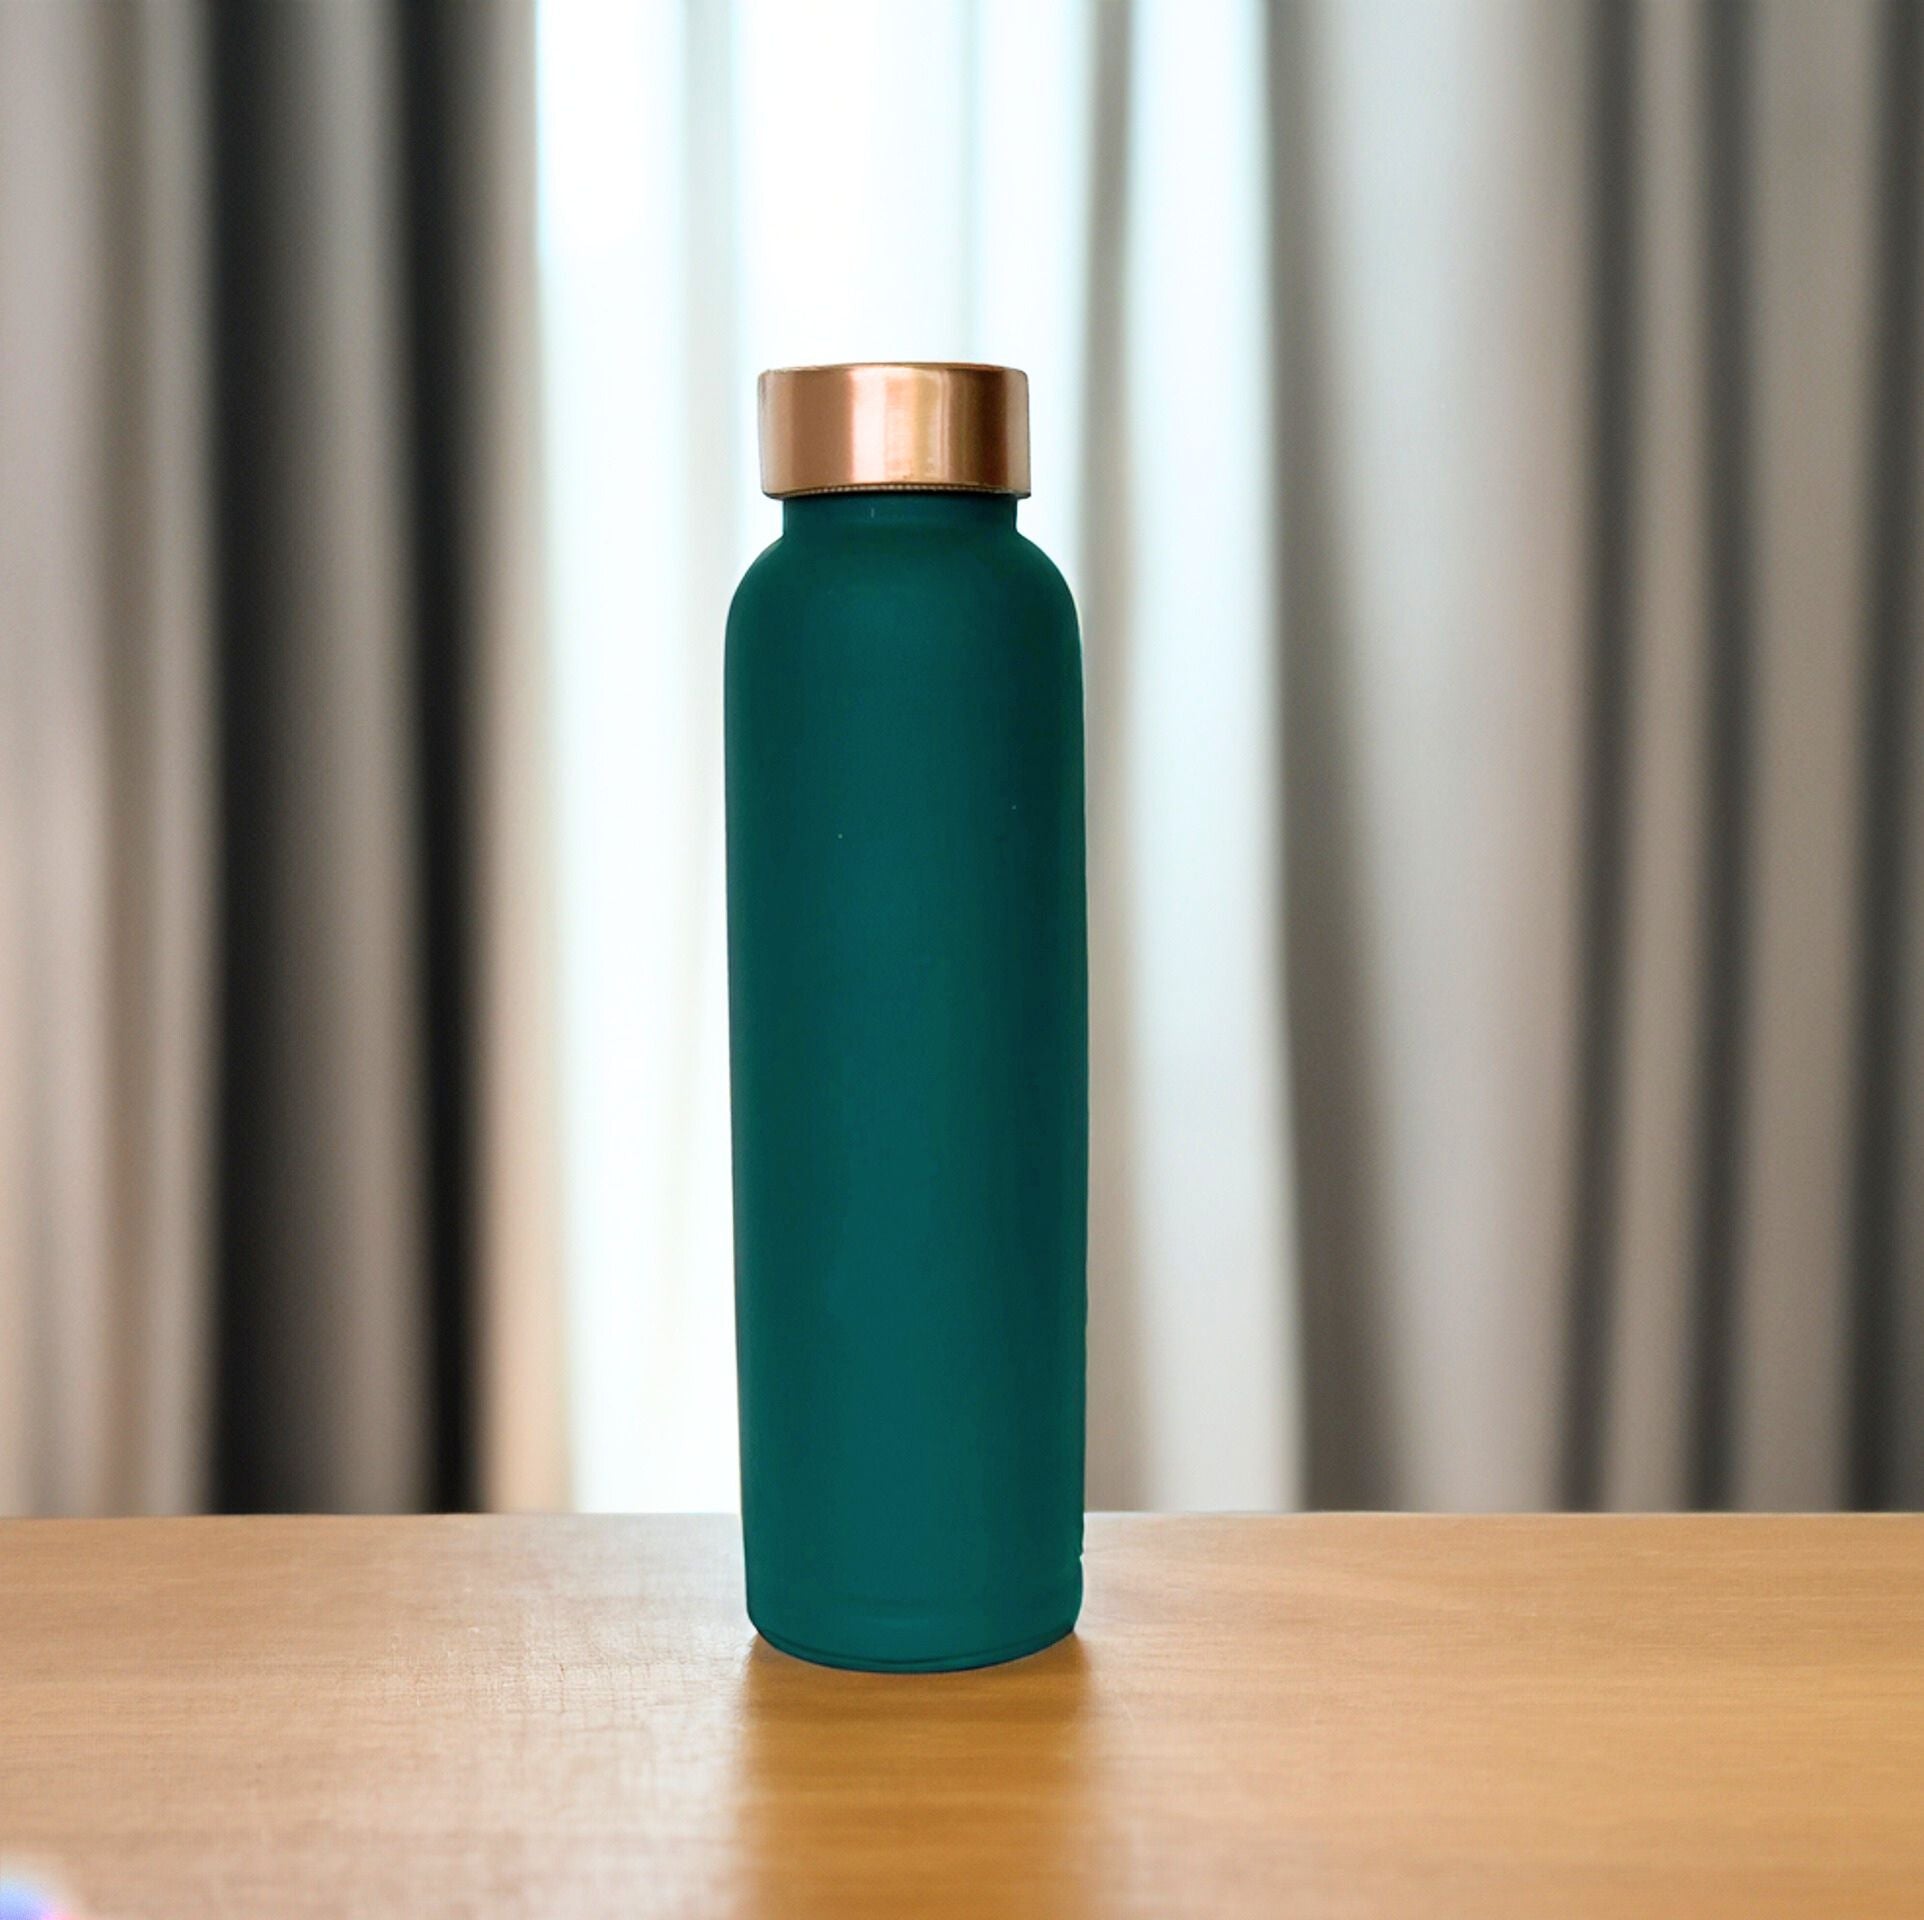 copper water bottle in usa